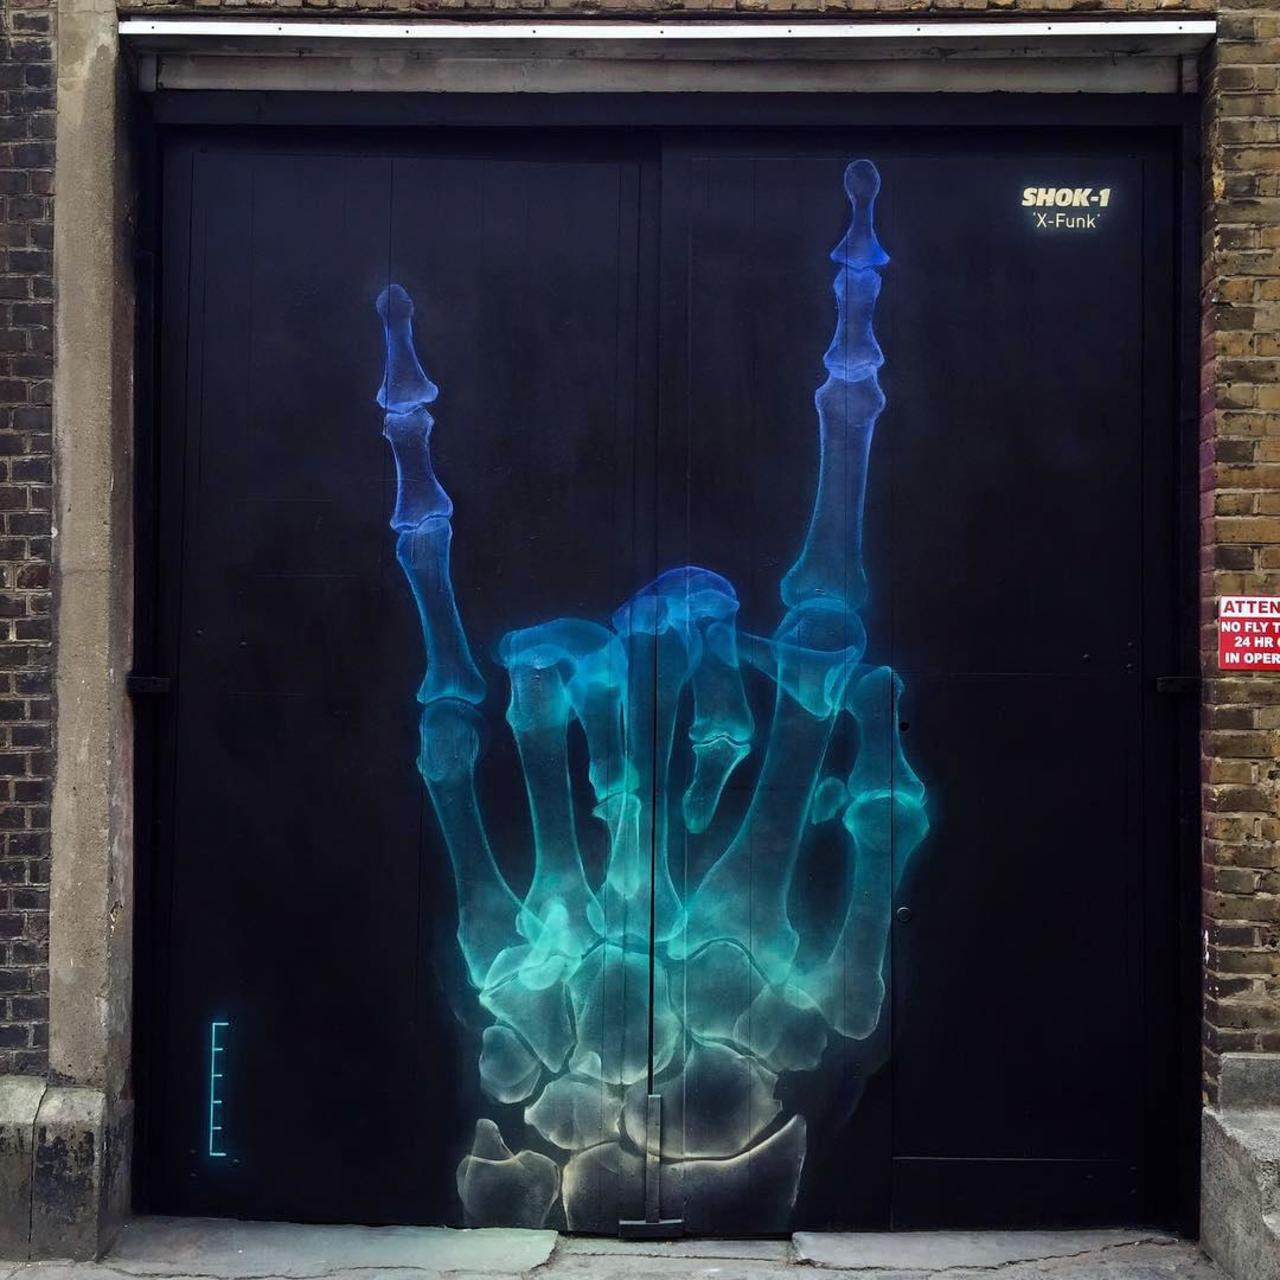 'X-Funk', a new mural by Shok-1 in East London, UK. #StreetArt #Graffiti #Mural http://t.co/5iomKhMCw8